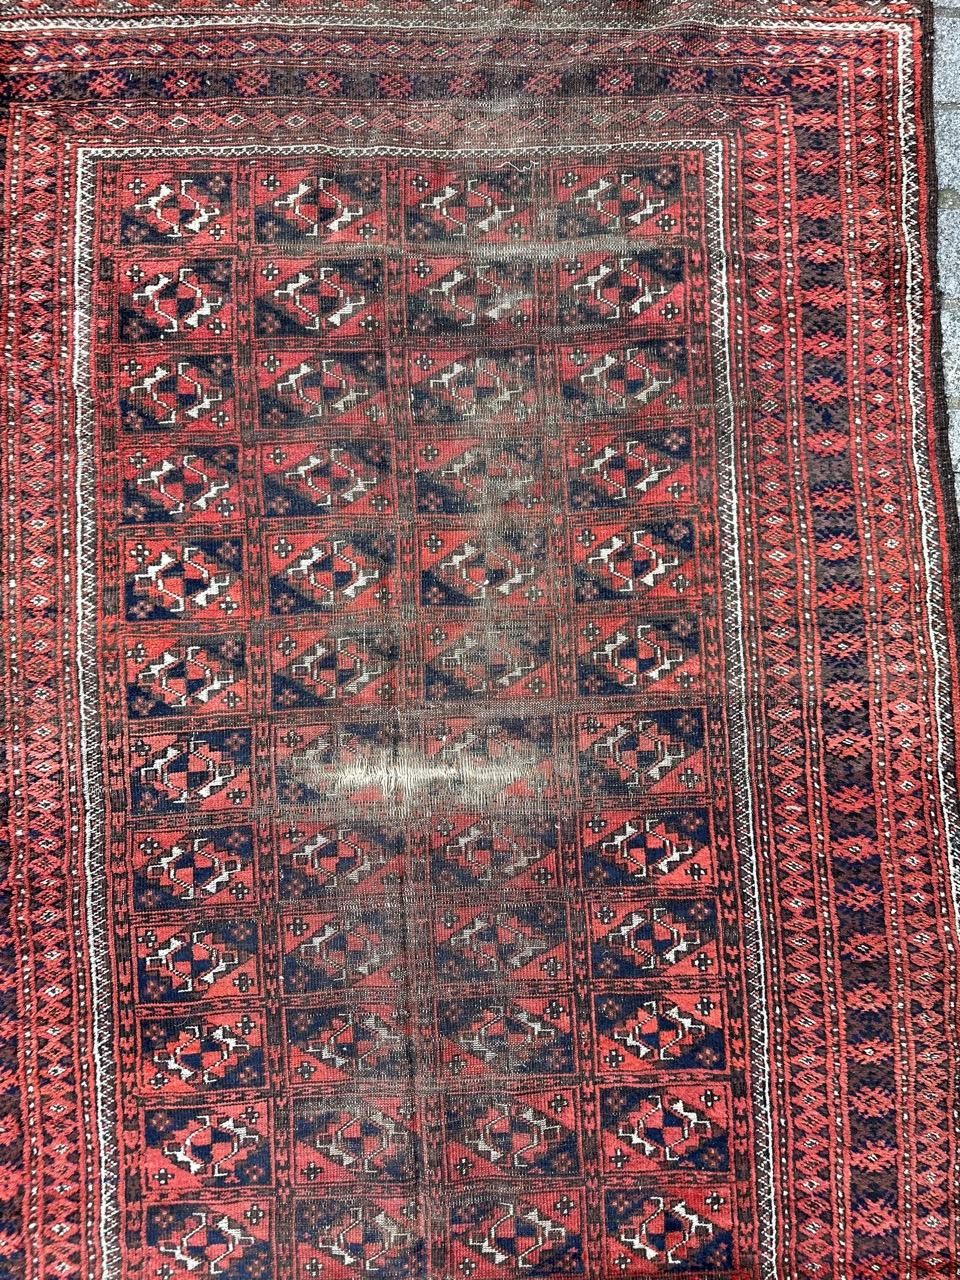 Tribal Bobyrug’s nice antique distressed Turkmen rug For Sale